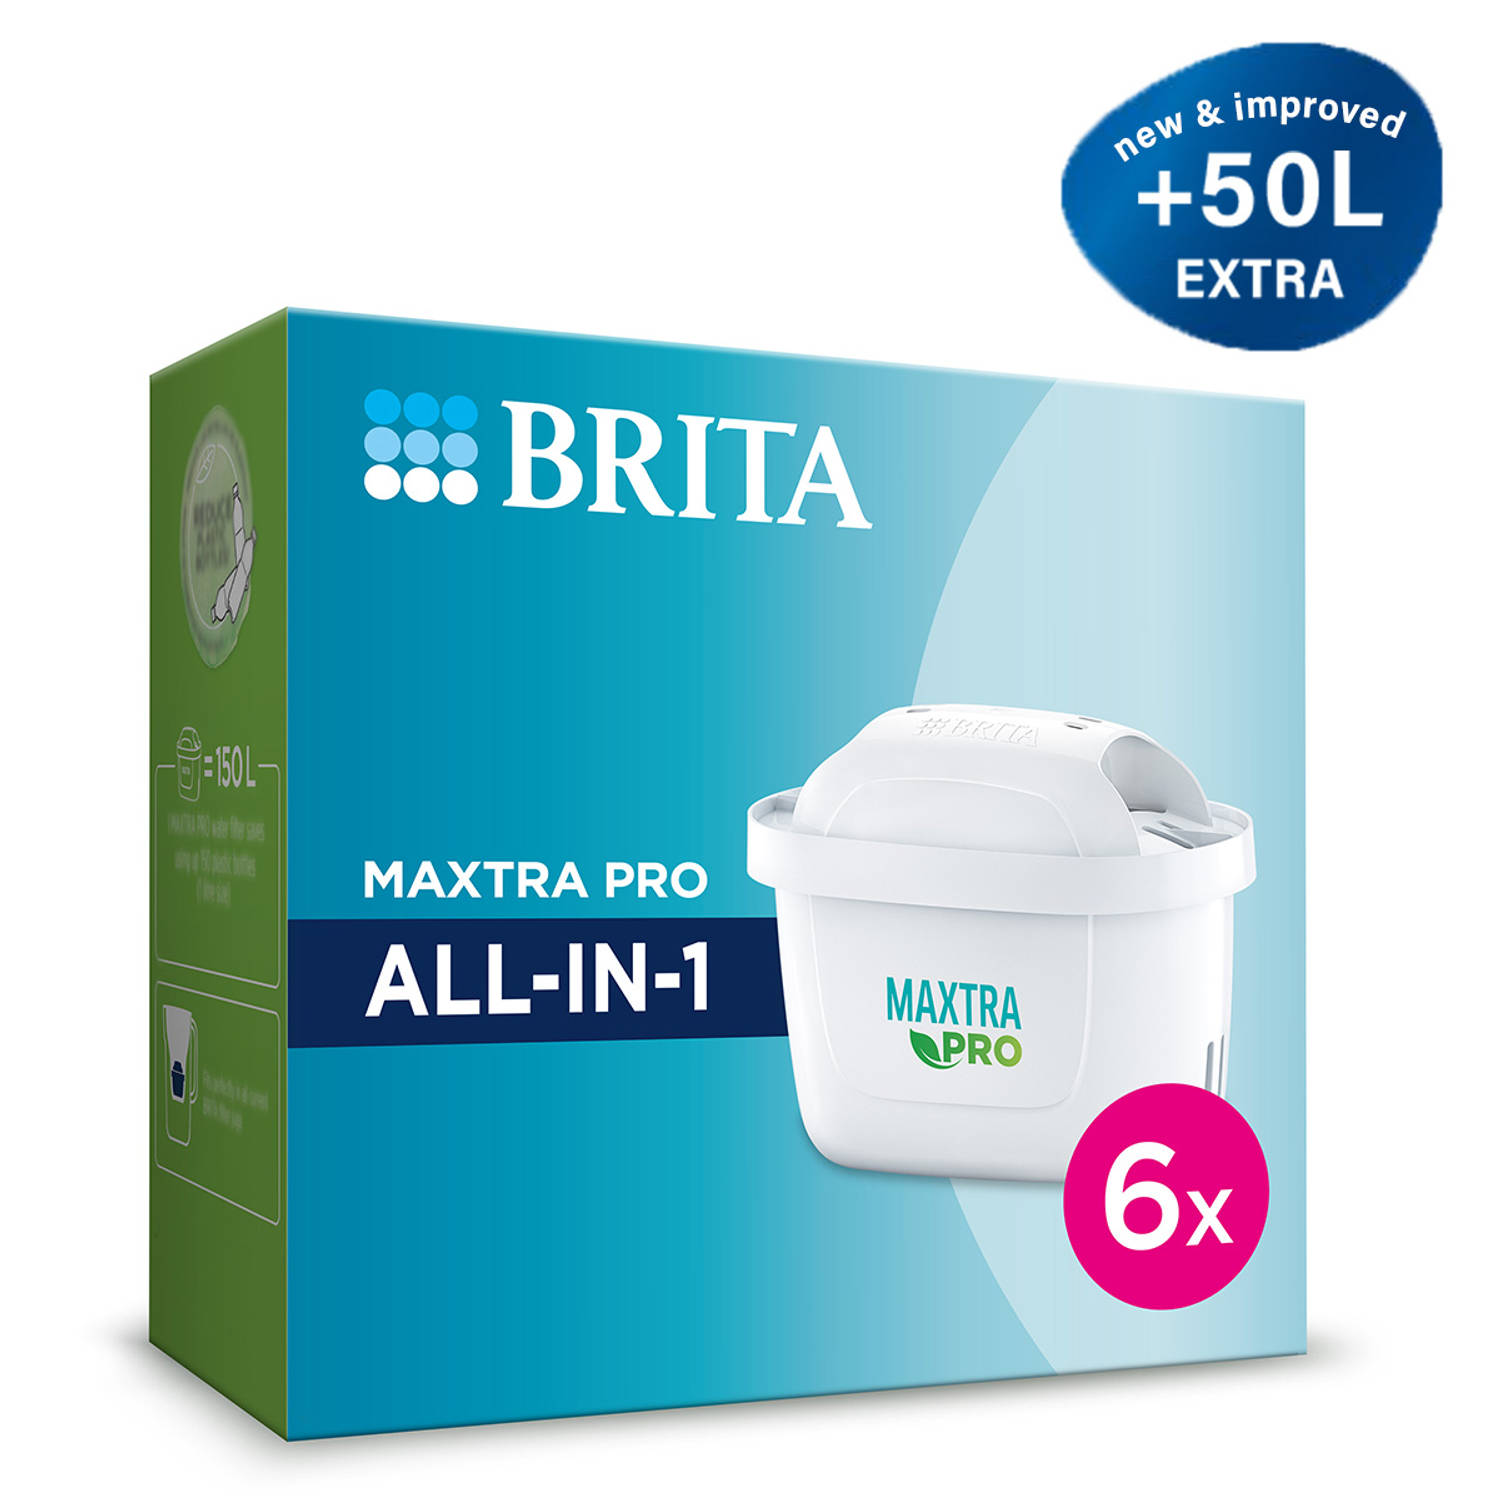 BRITA filterpatronen Waterfilterpatronen MAXTRA PRO ALL-IN-1 6-Pack voordeelverpakking